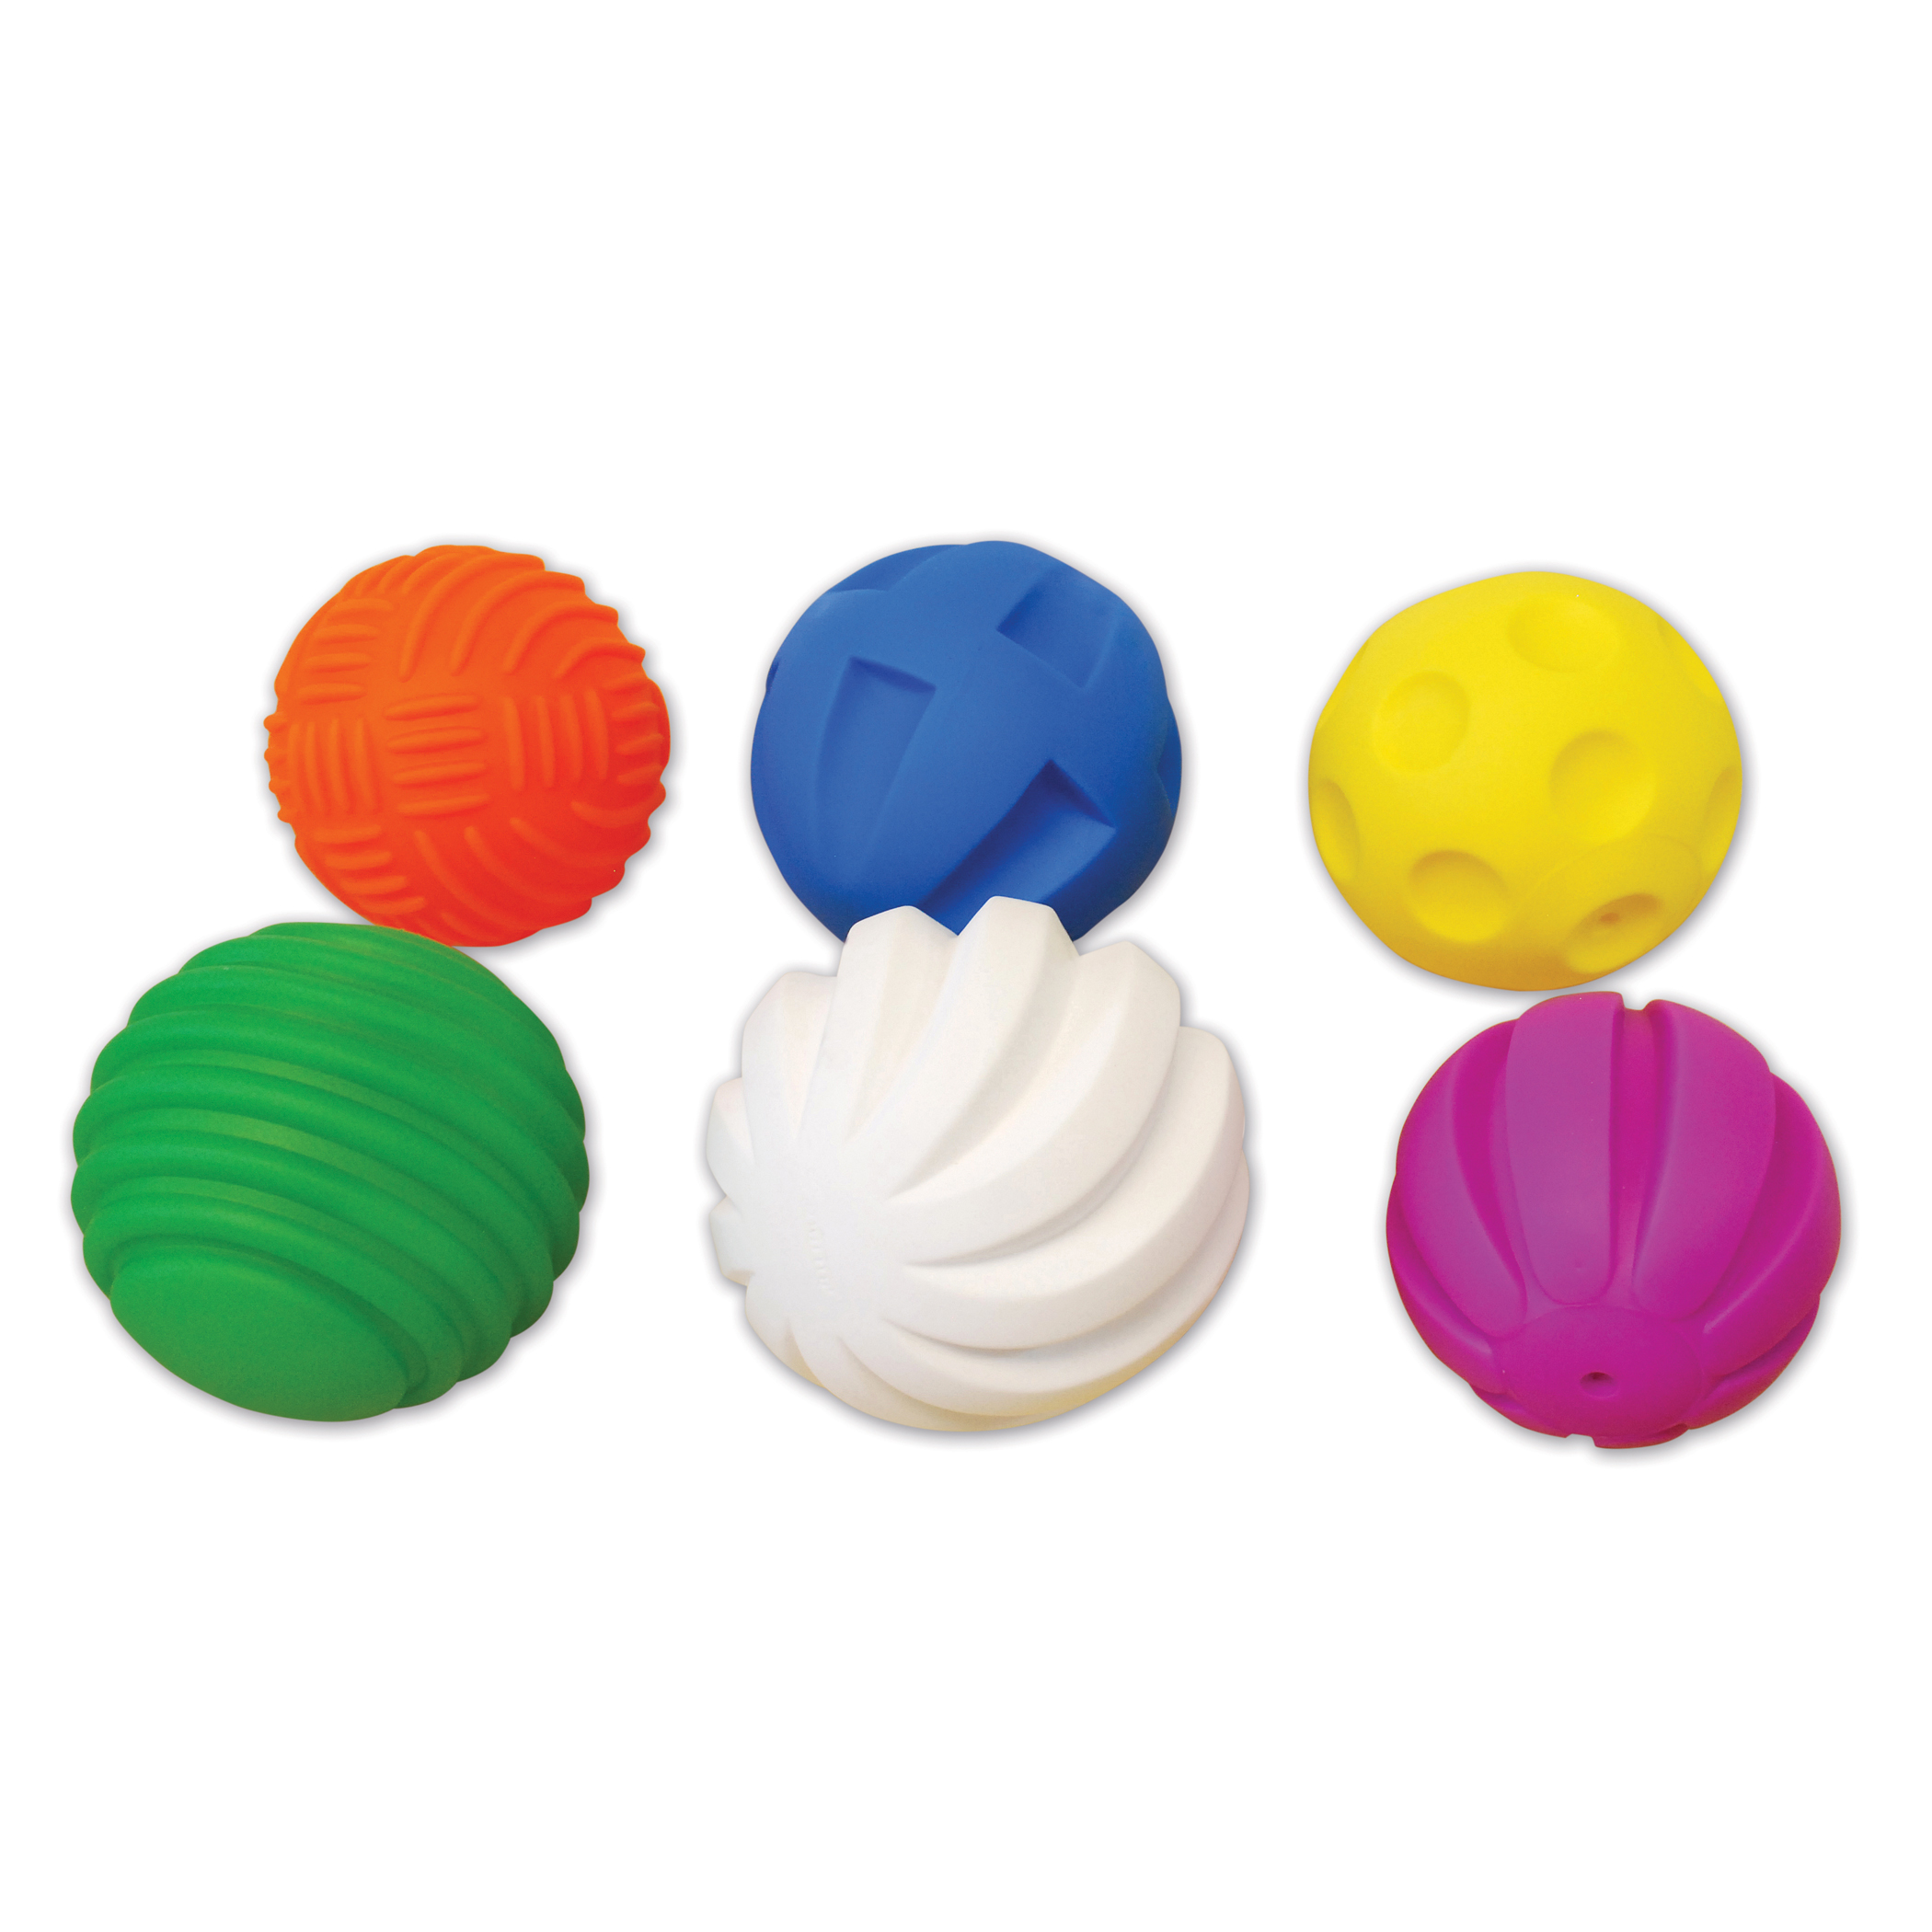 TickiT Tactile Balls - Set of 6